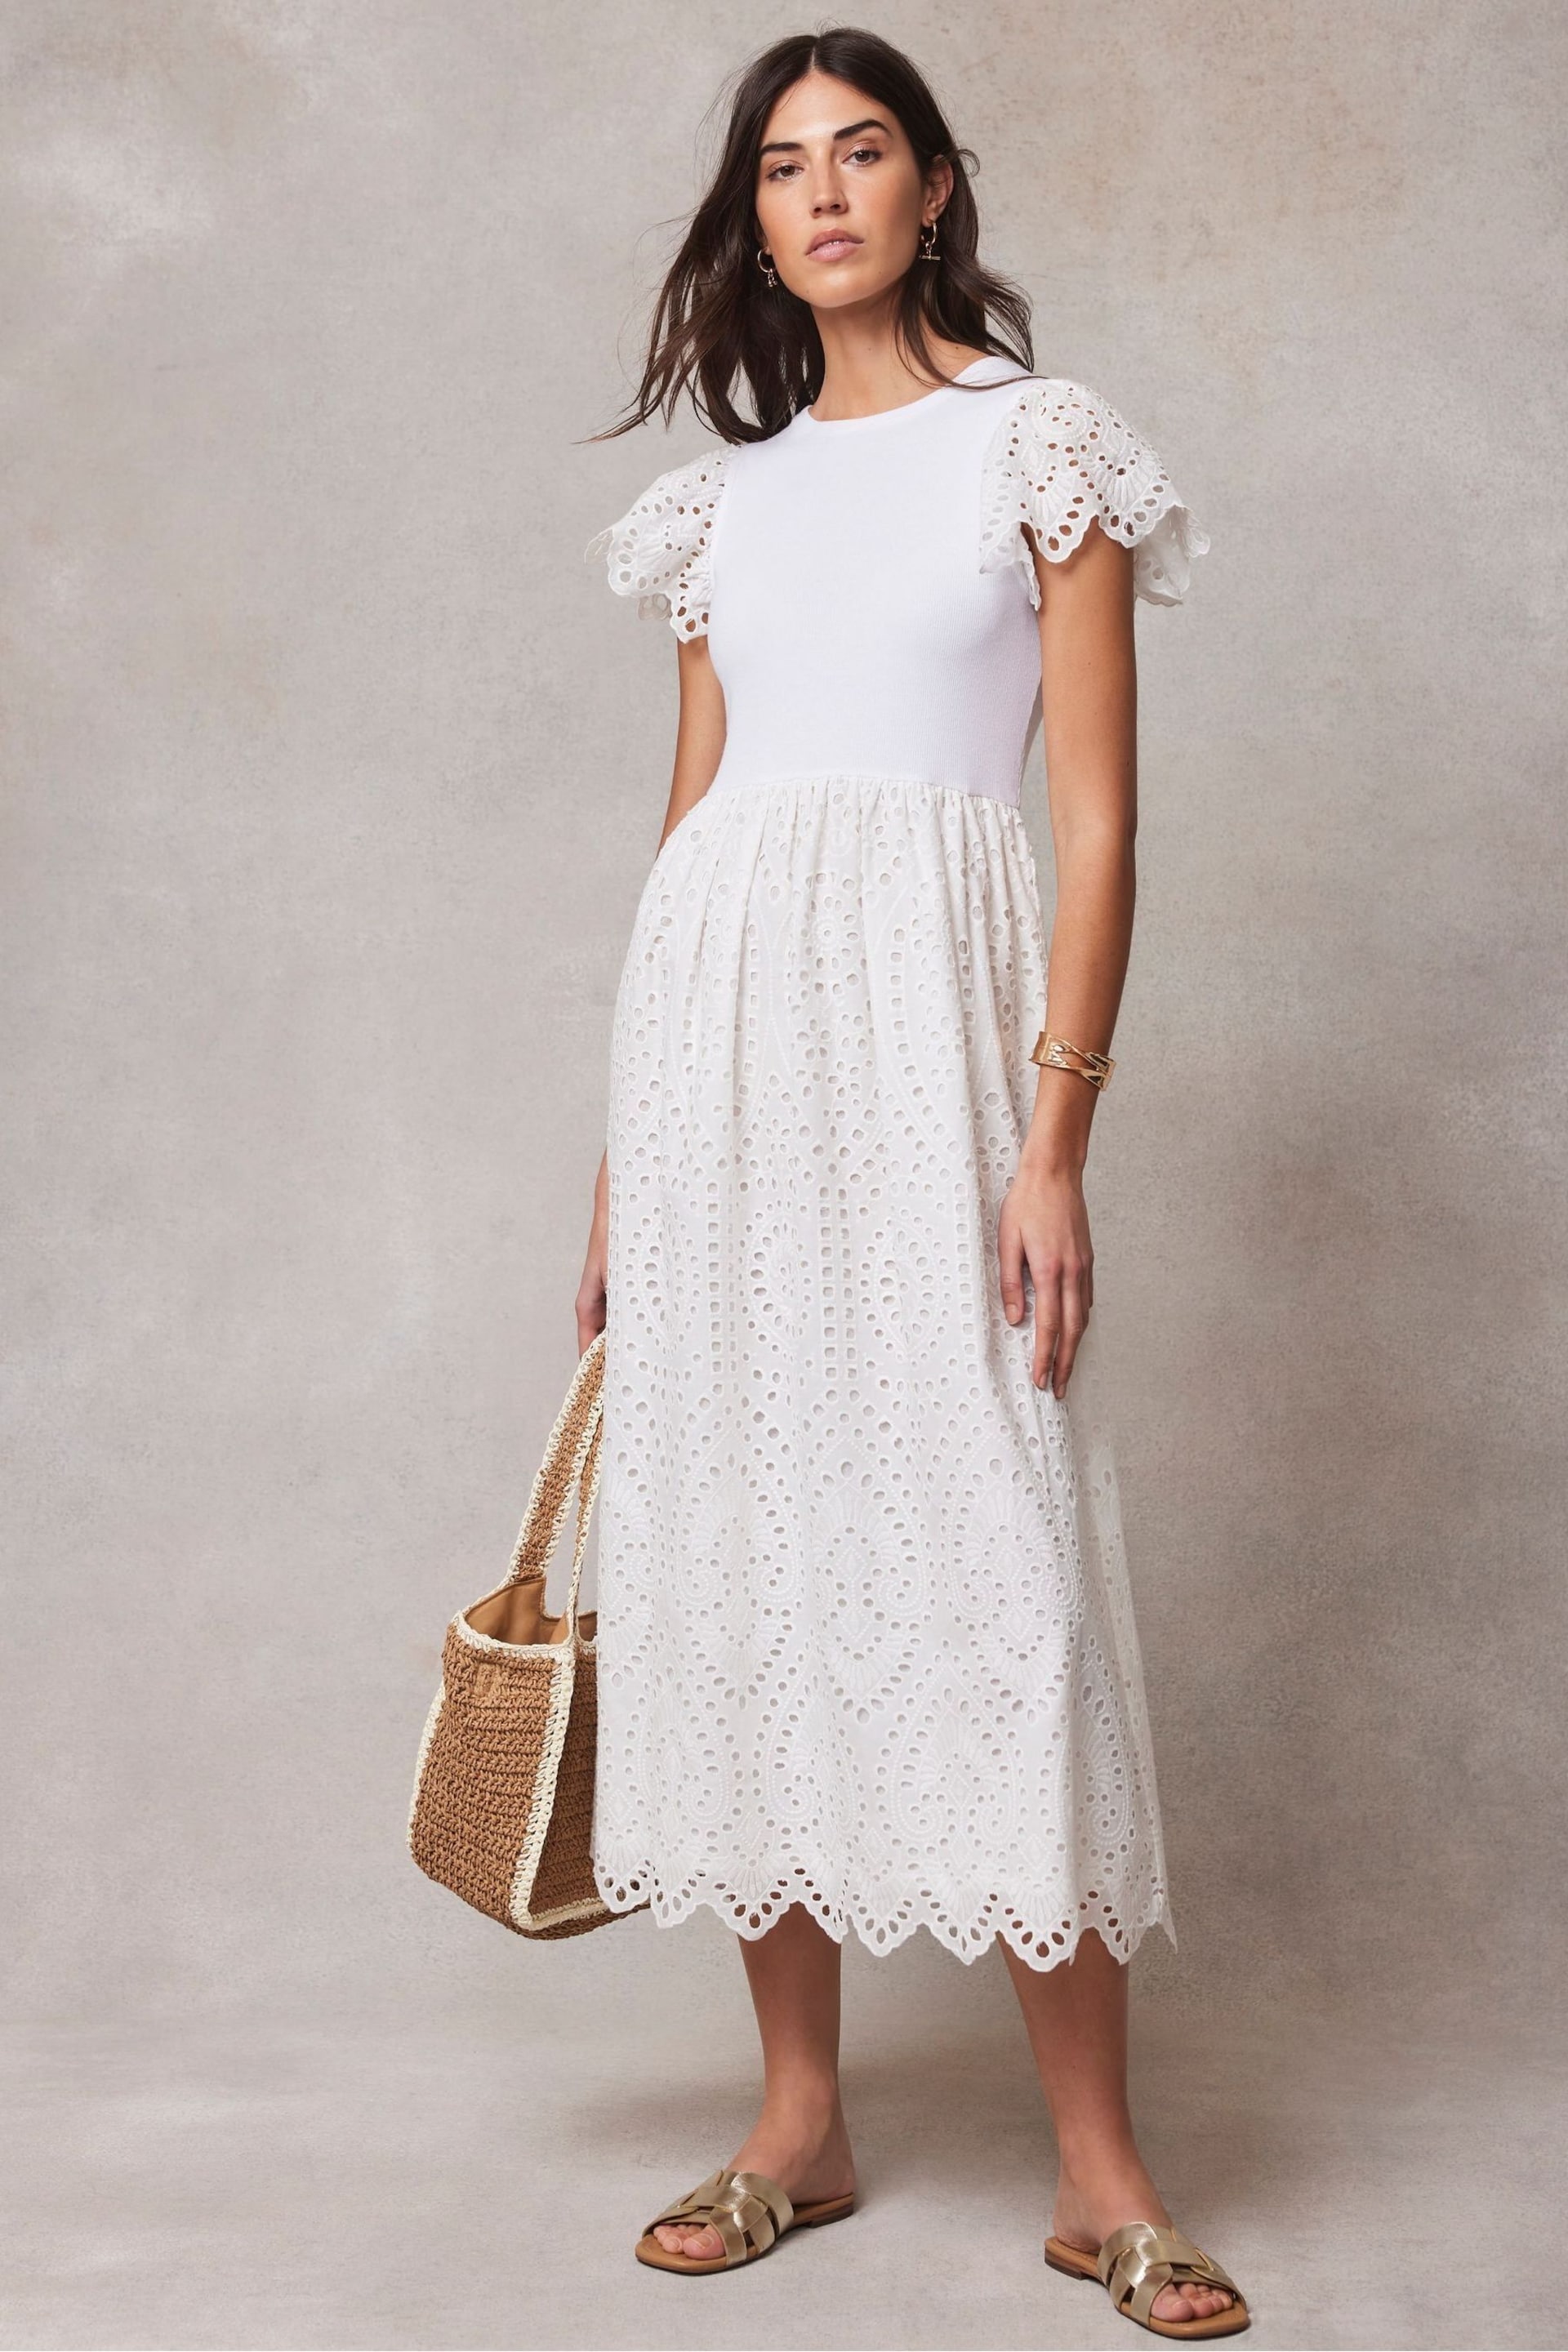 Mint Velvet White Broderie Midi Dress - Image 1 of 4